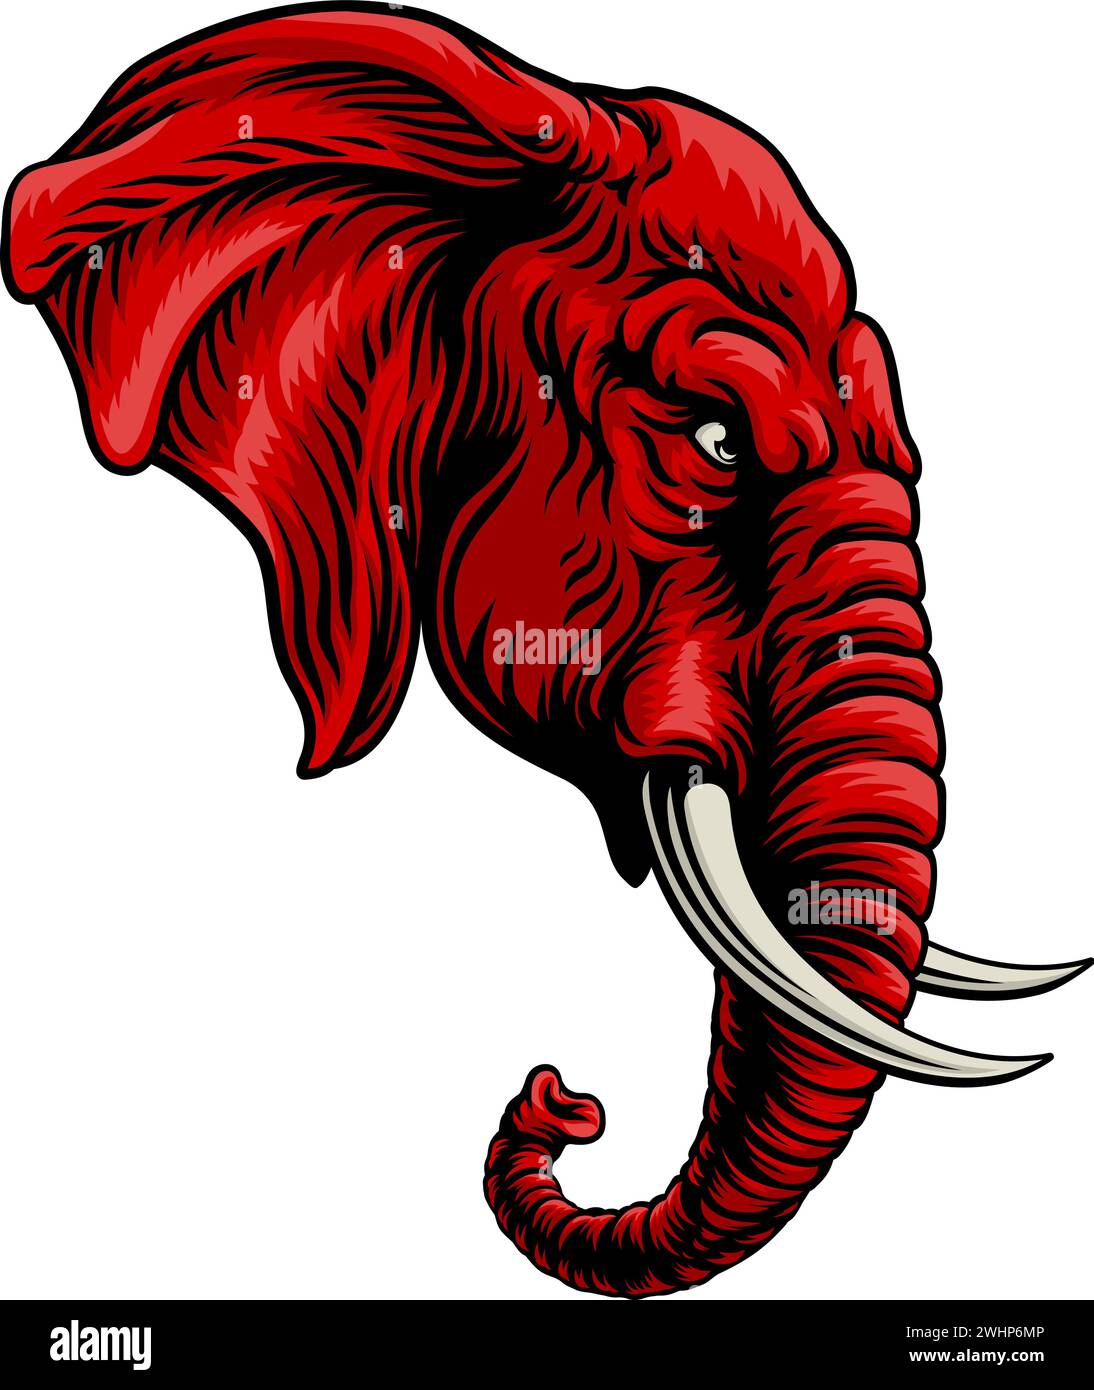 Republican Elephant Election Political Party Icon Stock Vector